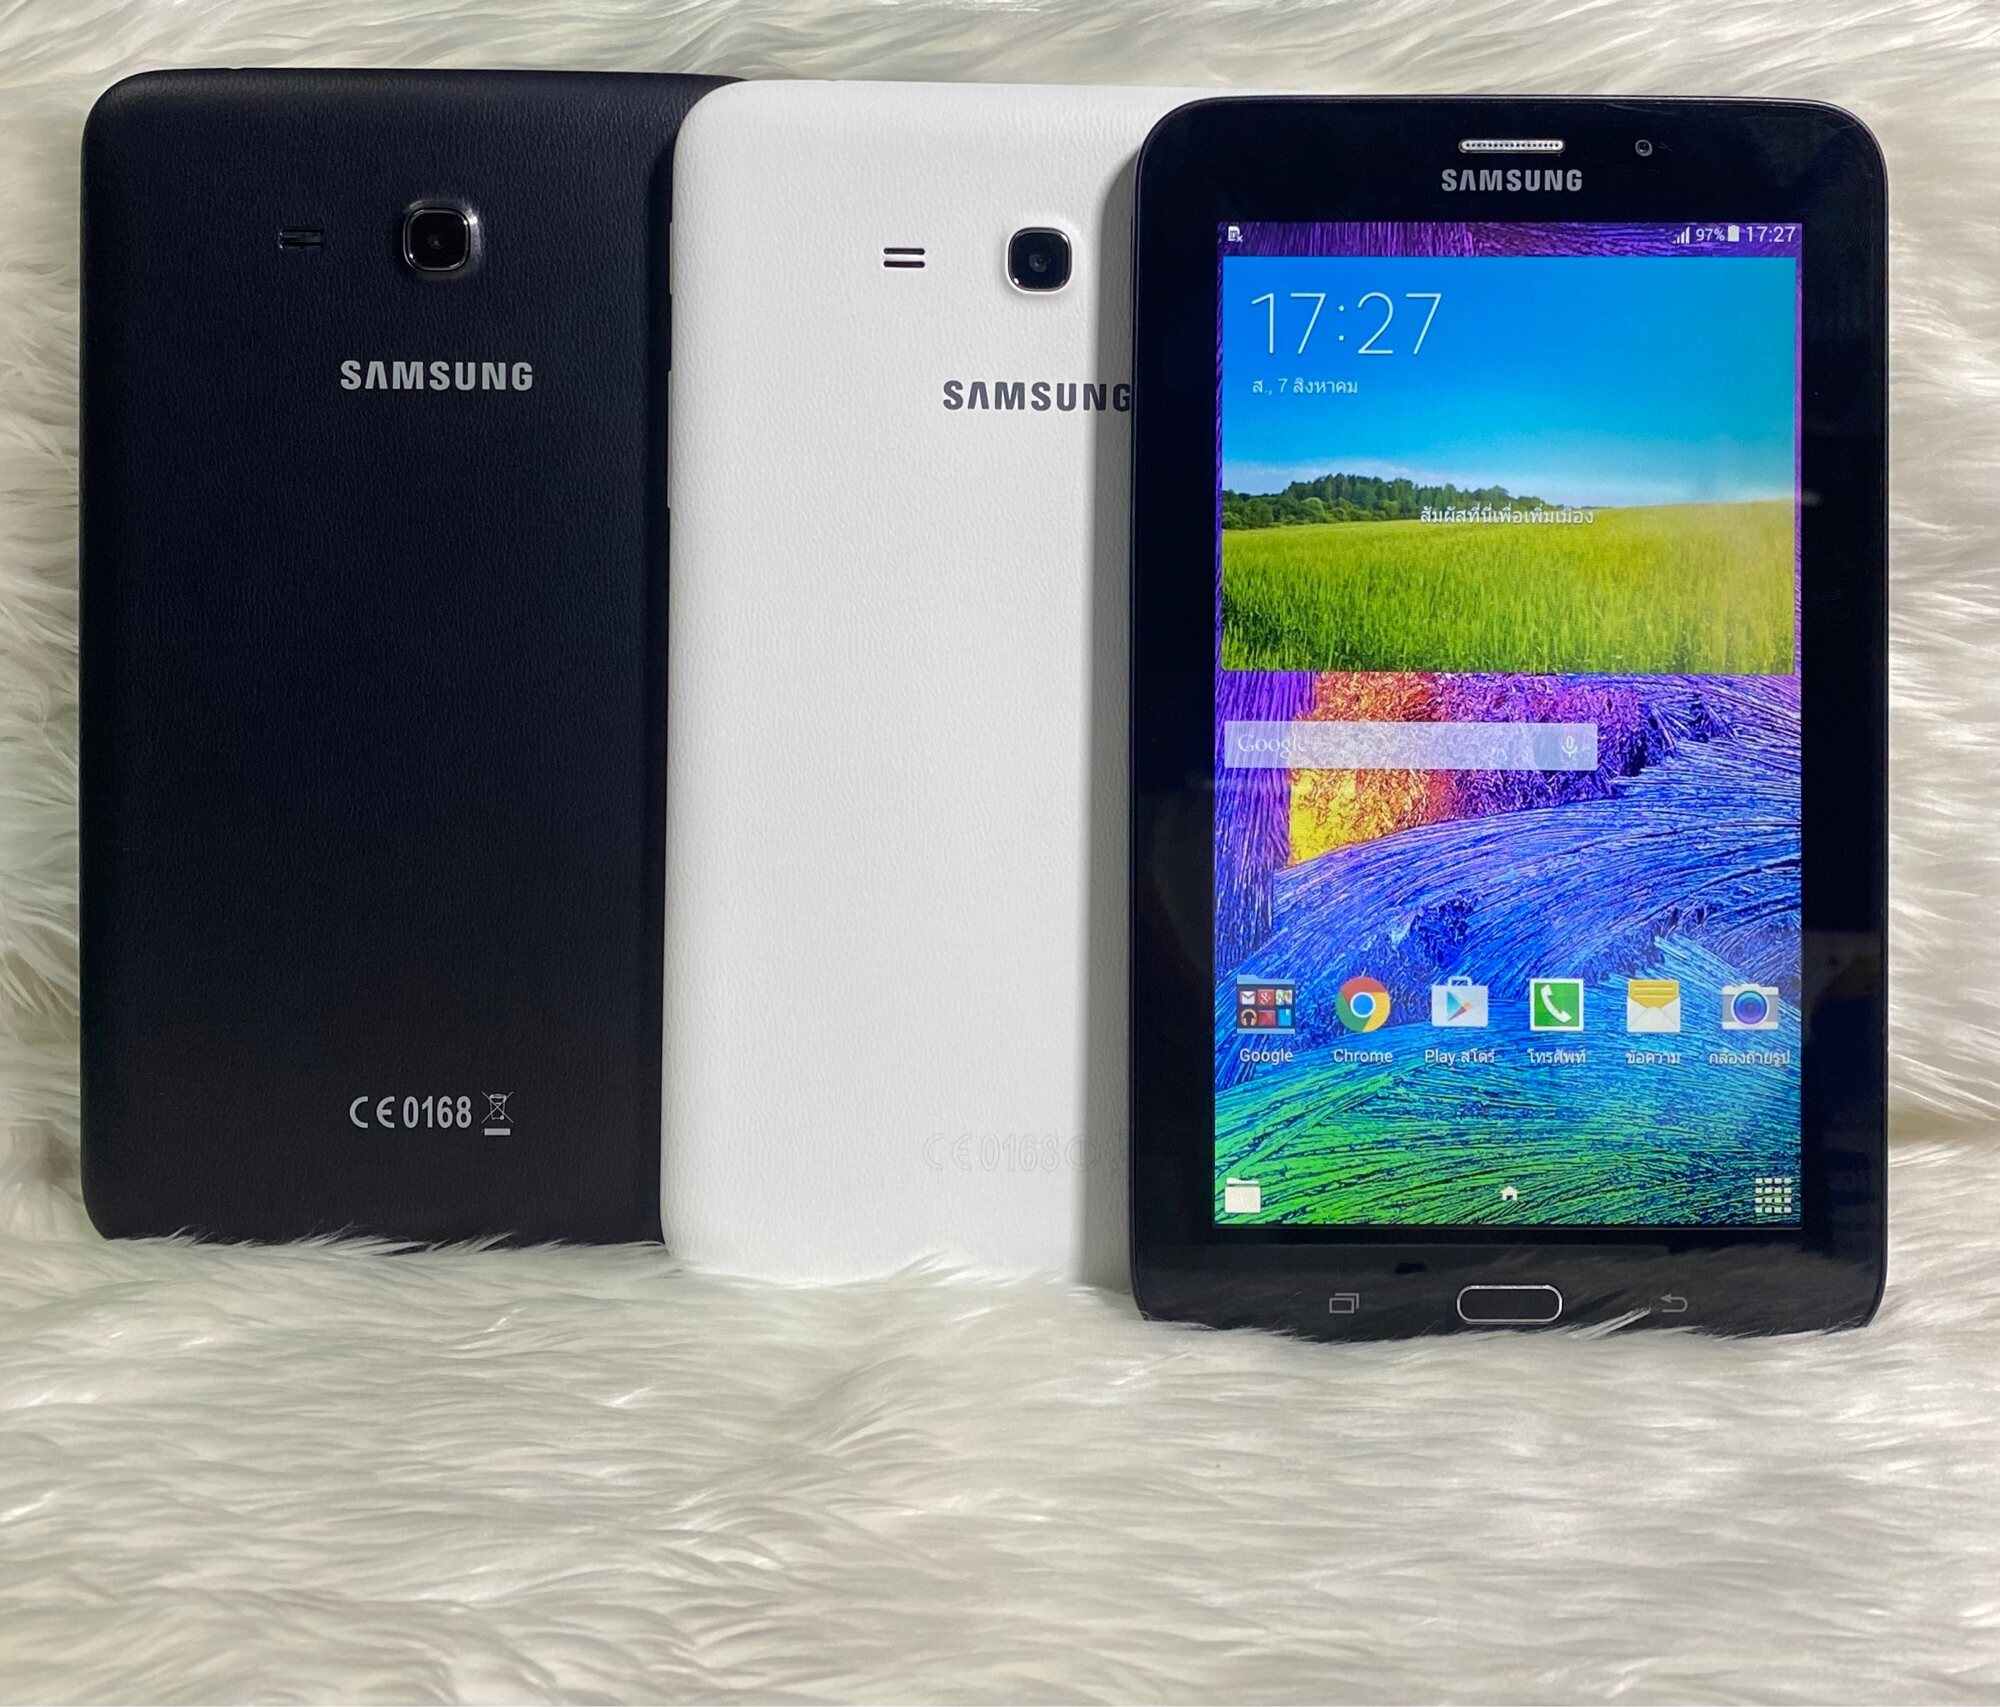 ภาพอธิบายเพิ่มเติมของ Samsung Galaxy Tab 3E แท็บเล็ตมือ-2พร้อมใช้งานเครื่อง​ไม่มีที่ปิดซิม(ฟรีชุดชาร์จ)